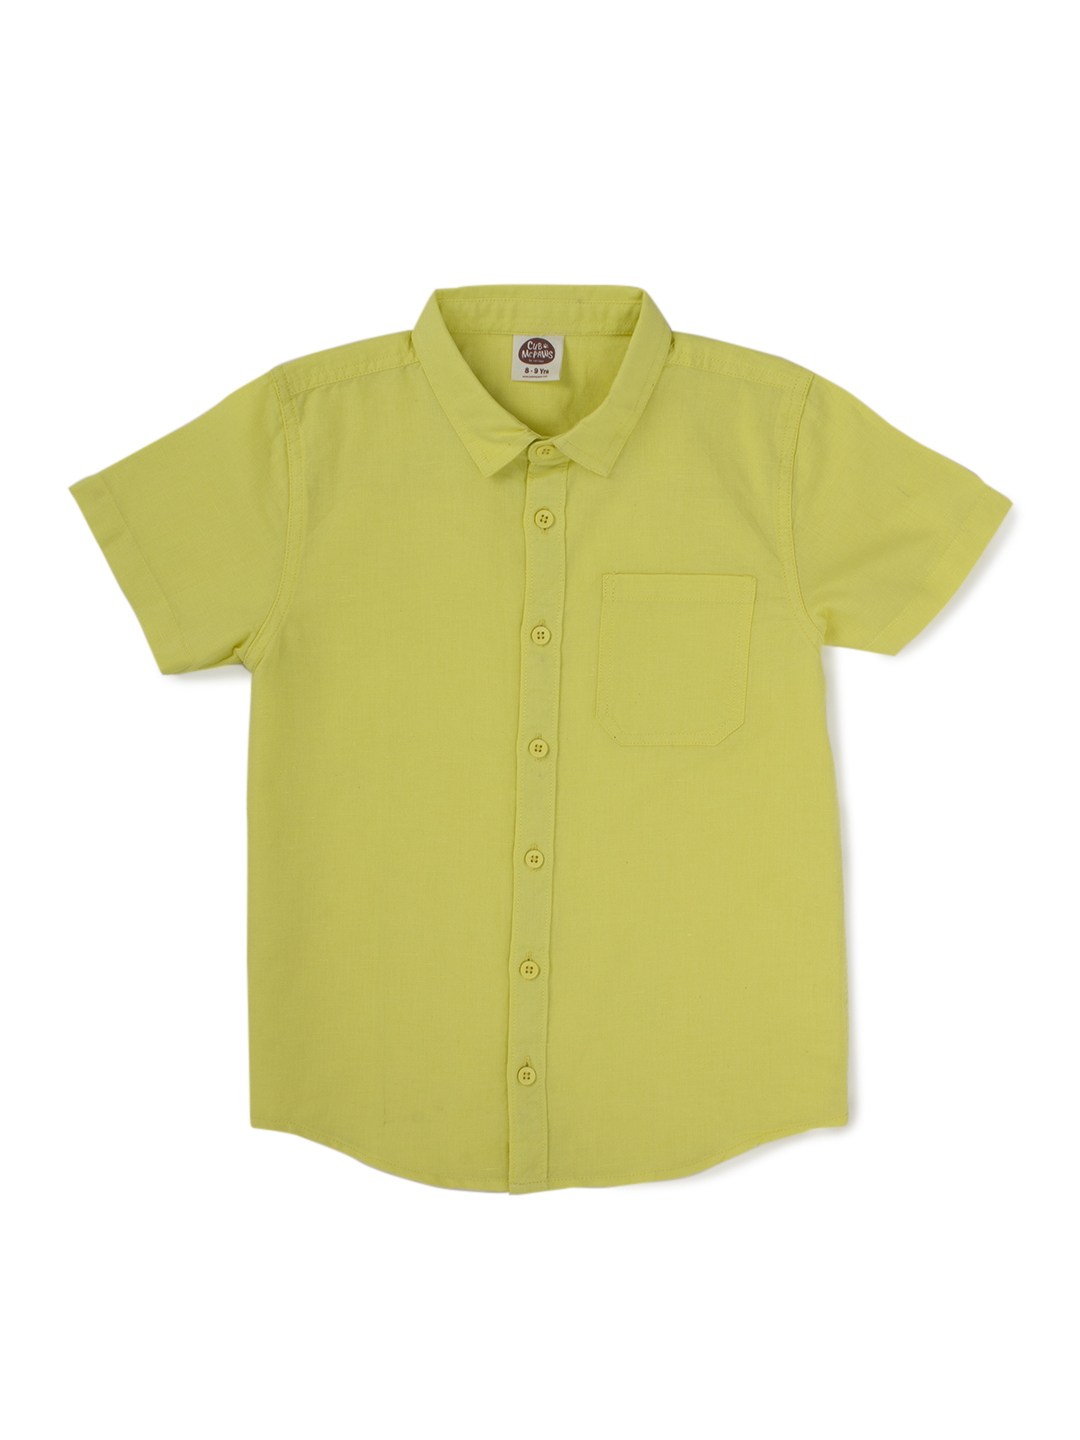 Boys Cotton Linen Shirt - Lime Yellow (EOSS)